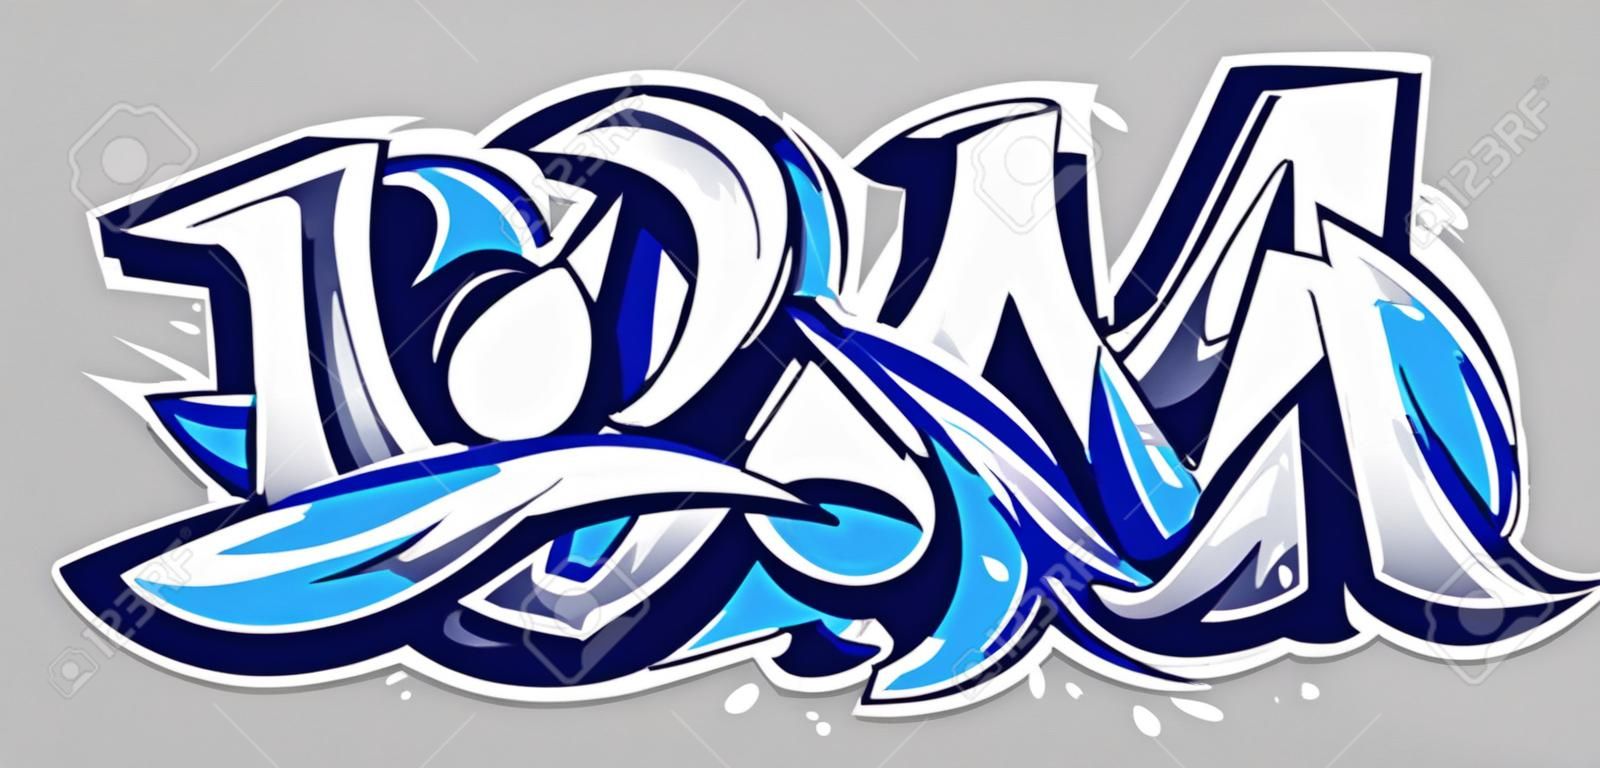 Big Up blaue Farbvektorbeschriftung auf grauem Hintergrund. Dynamische Graffiti-Kunst im wilden Stil. Abstrakte Illustration der dreidimensionalen Buchstaben.